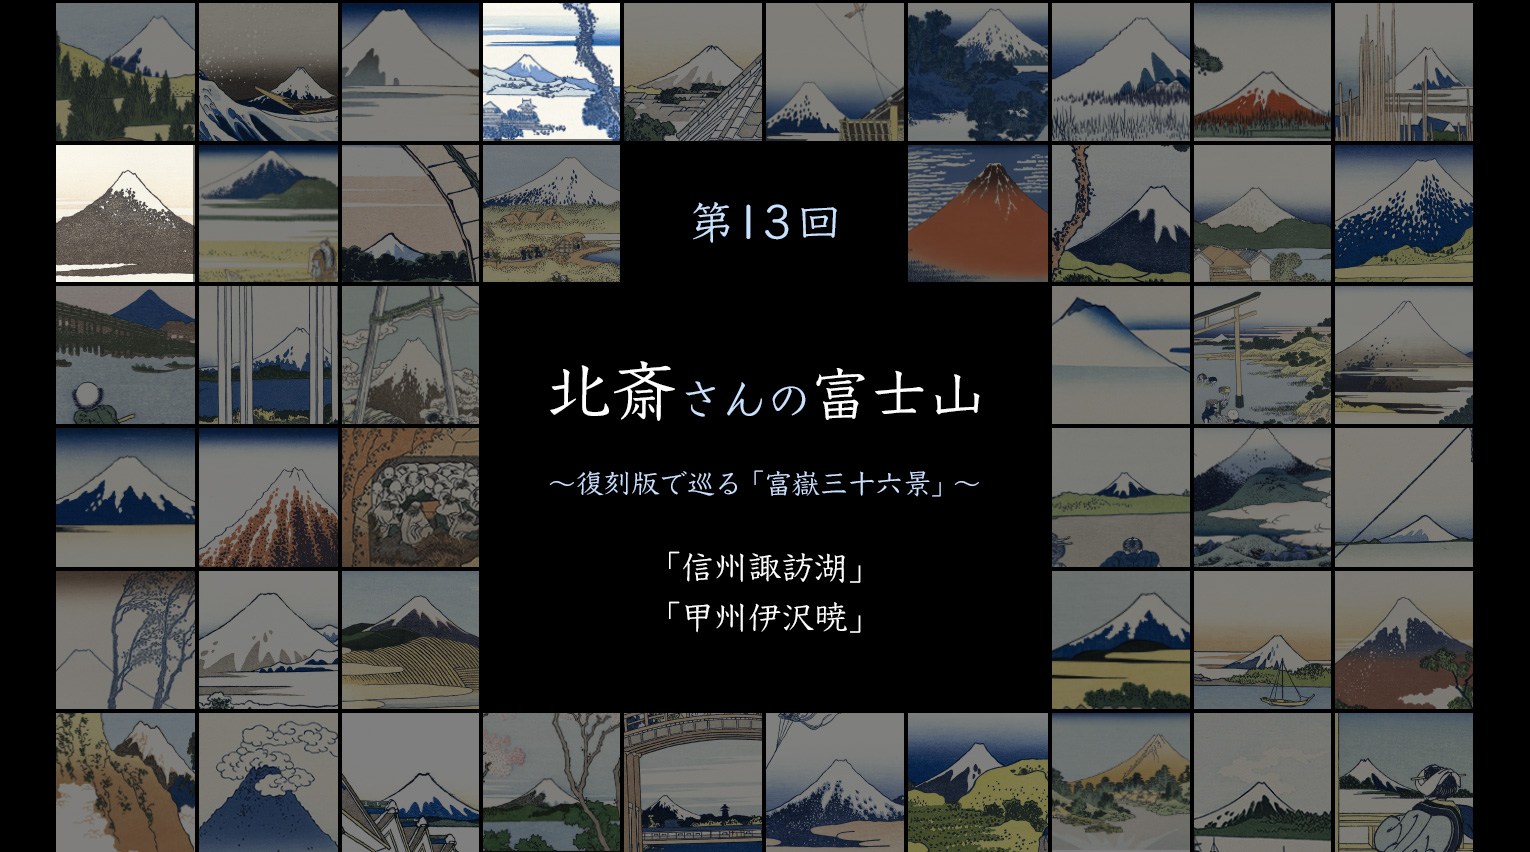 北斎さんの富士山 〜復刻版で見る「富嶽三十六景」〜 (13)【PR】 